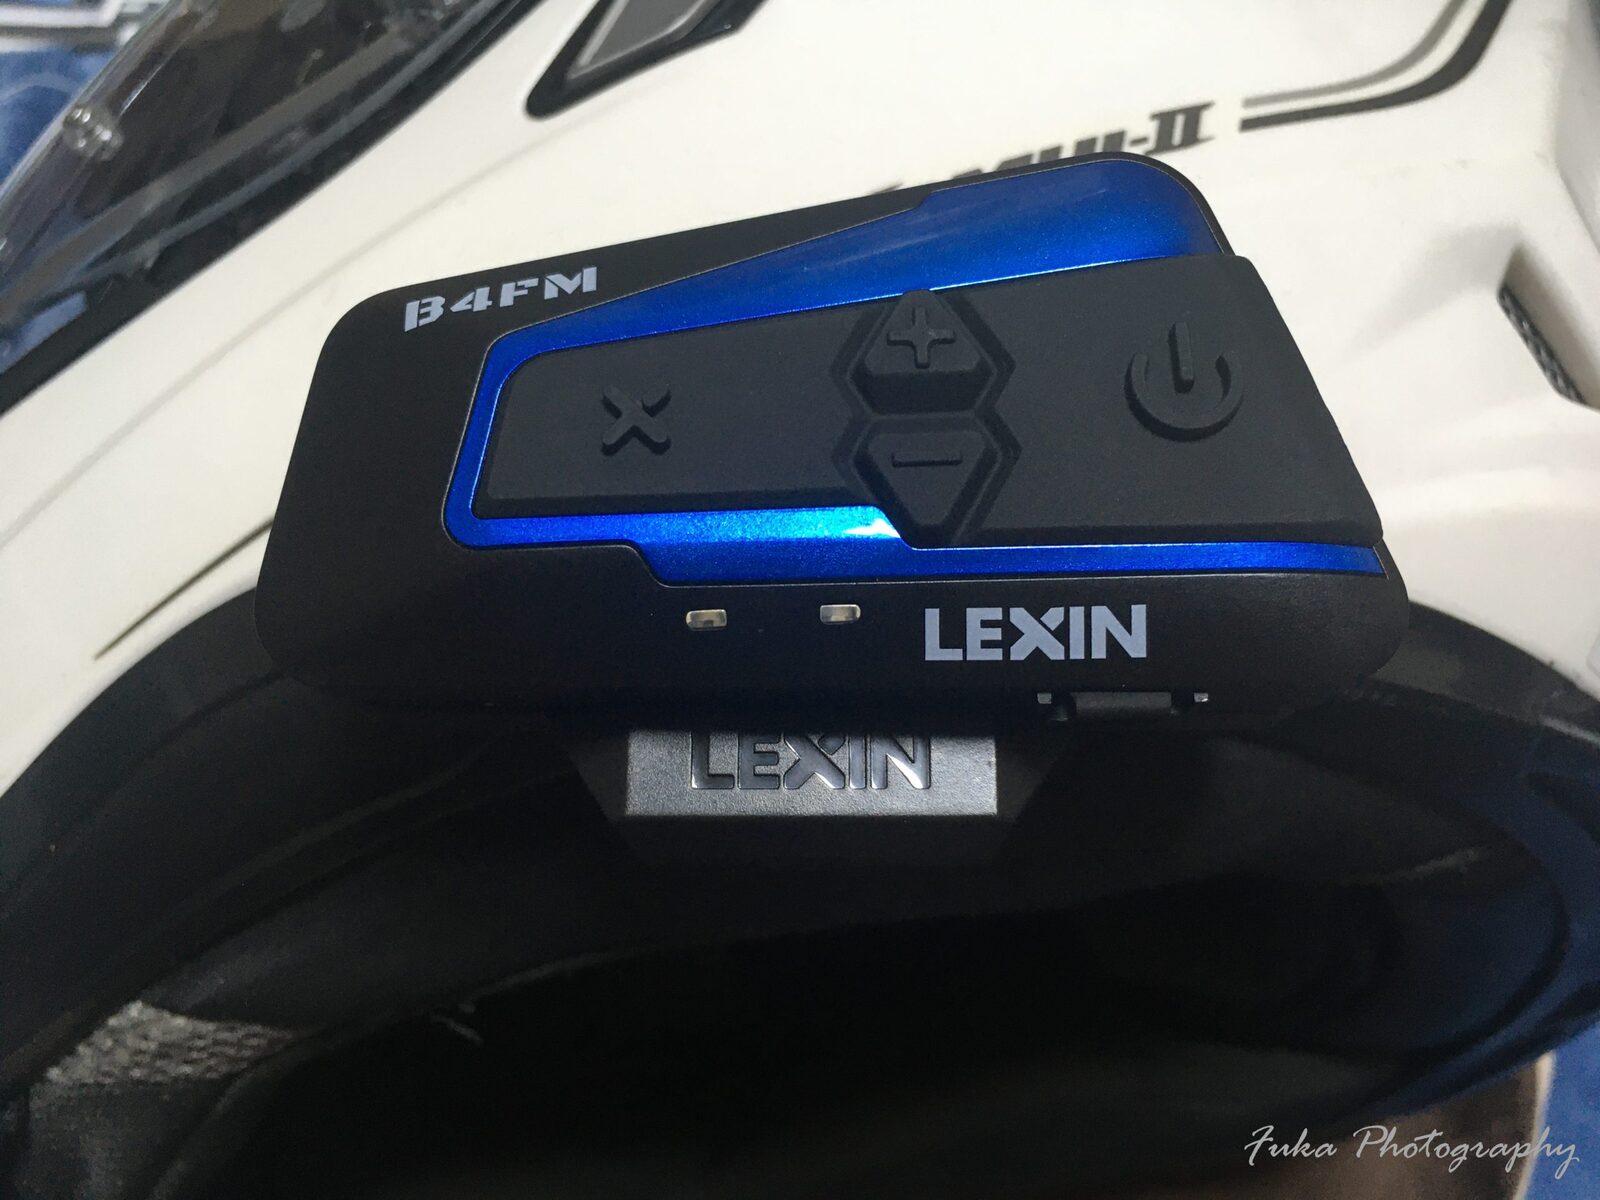 バイク インカム LEXIN 「LX-B4FM SINGLE PACK」 を購入してみました 無題ドキュメント